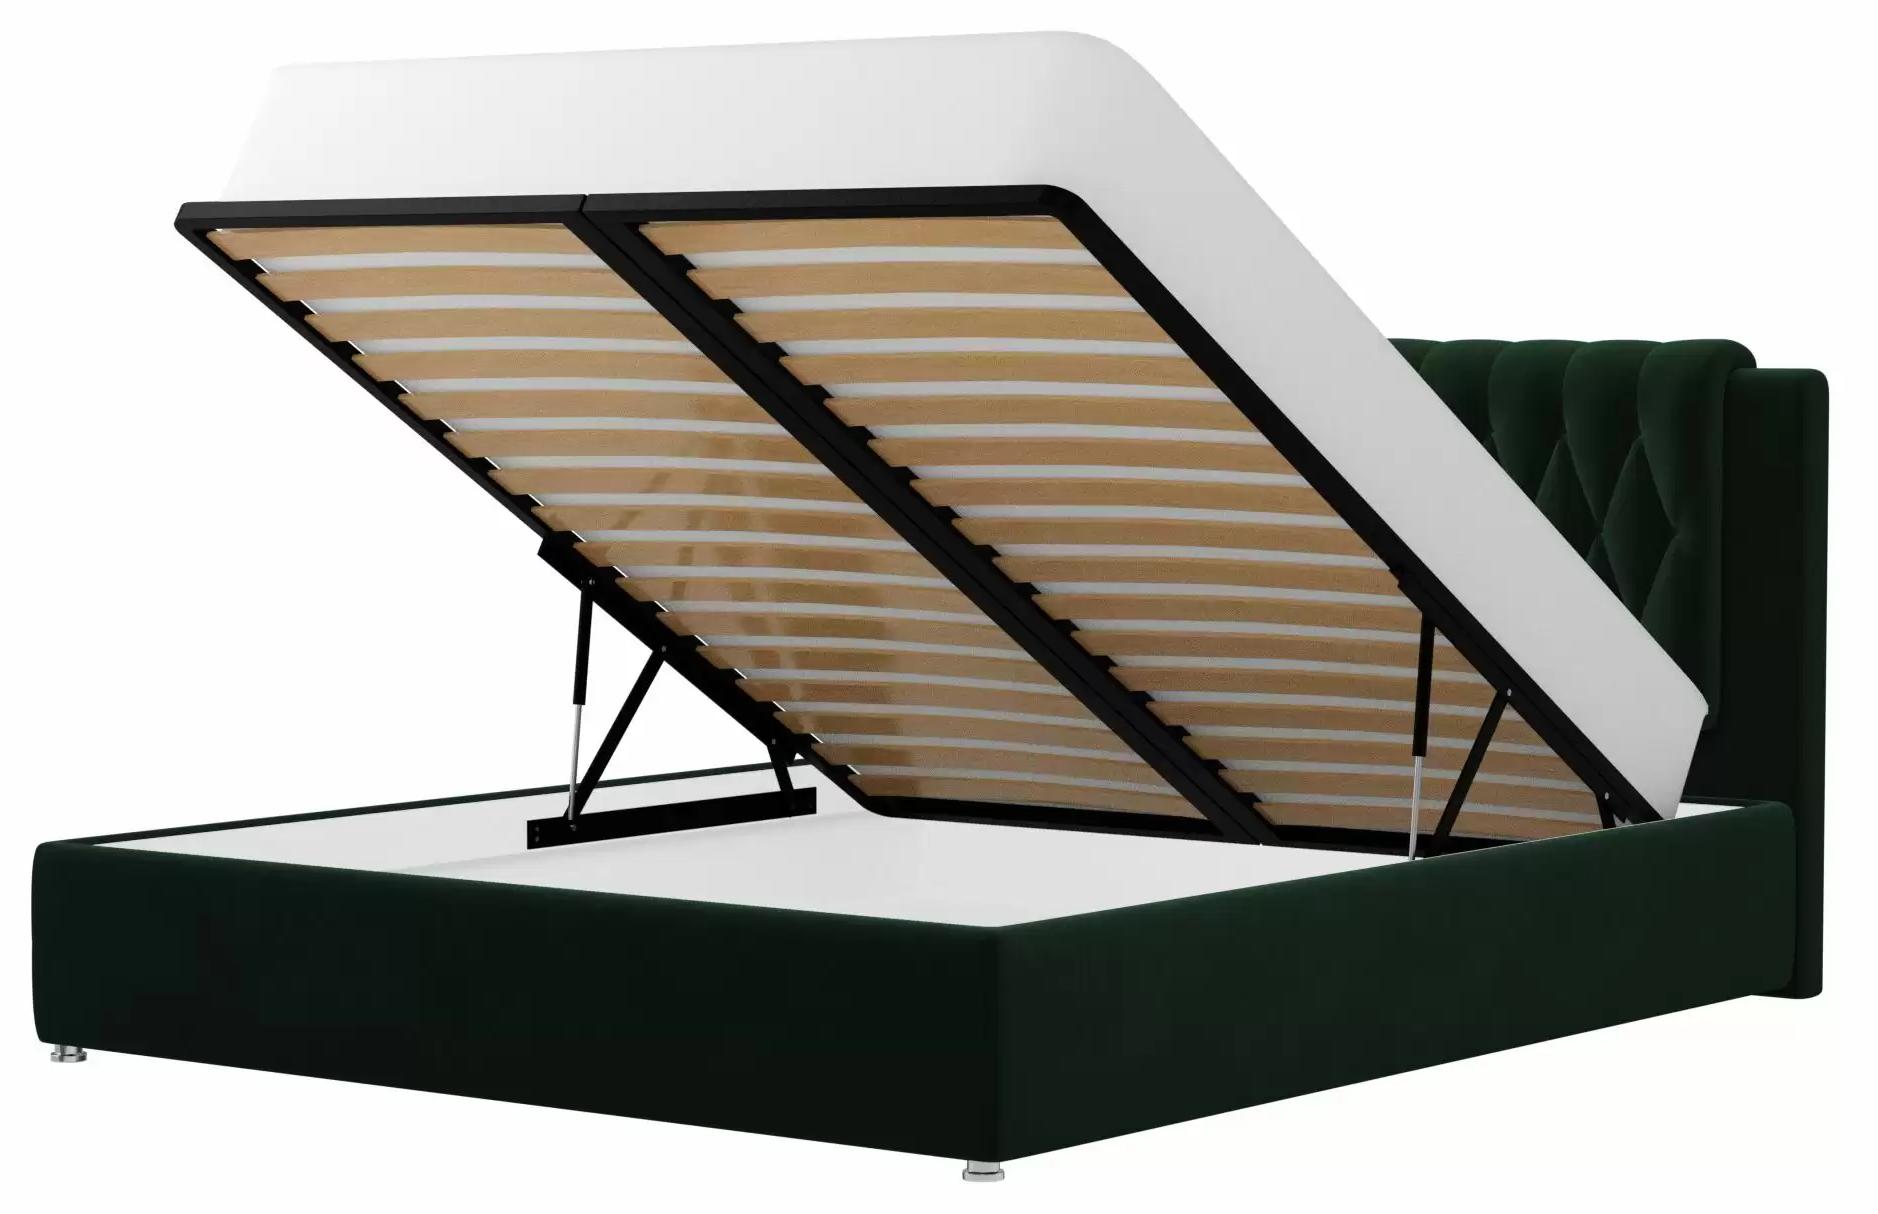 Интерьерная кровать Камилла (Зеленый)